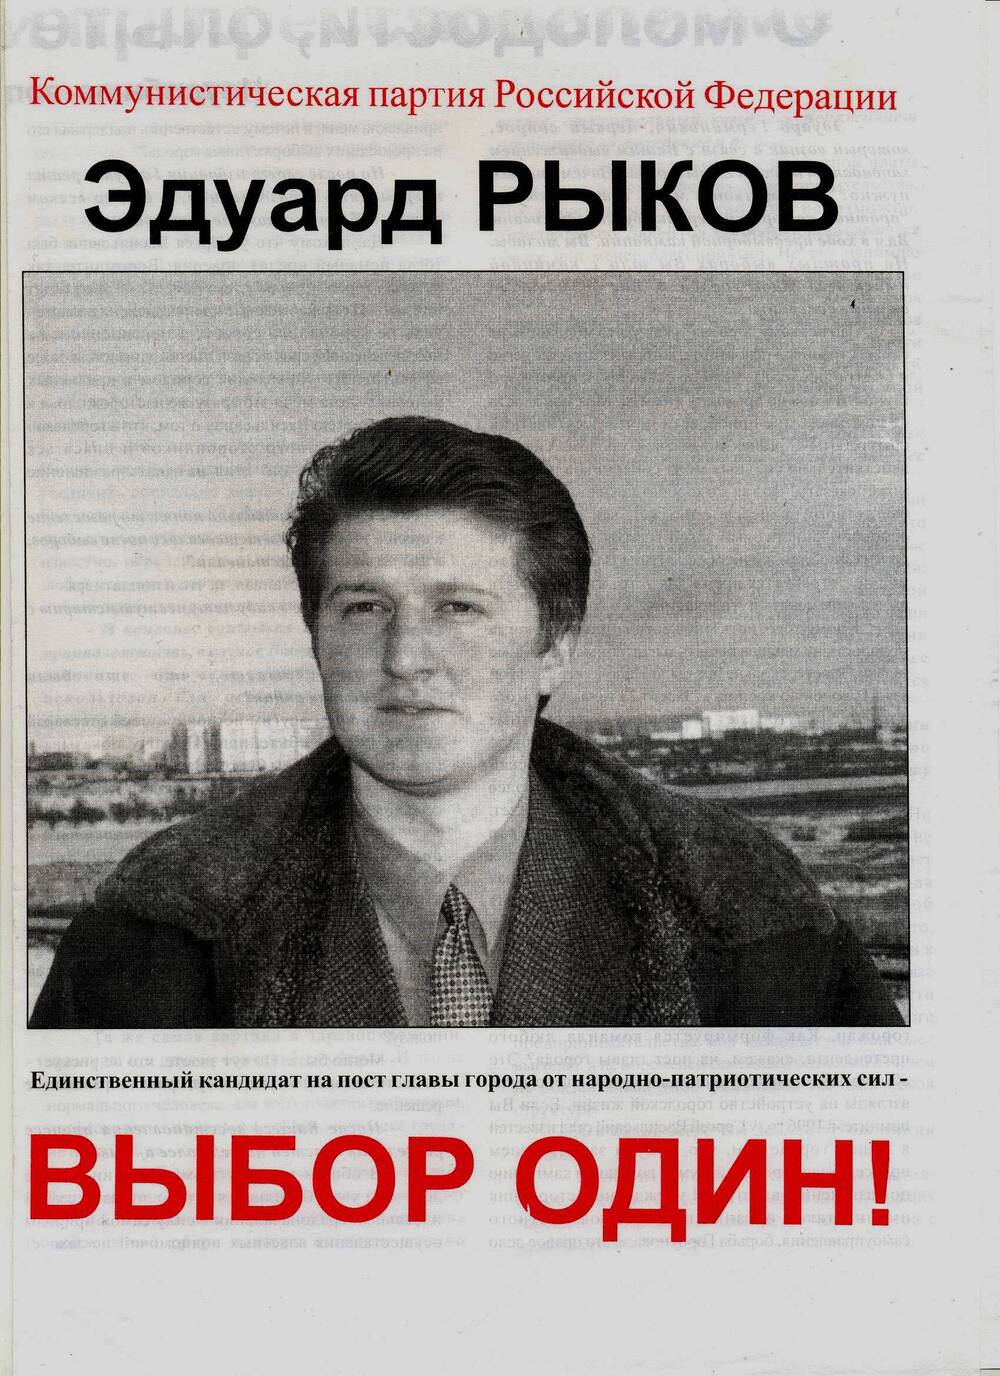 Агитационный лист. Единственный кандидат на пост главы города от народно-патриотических сил - Эдуард Рыков